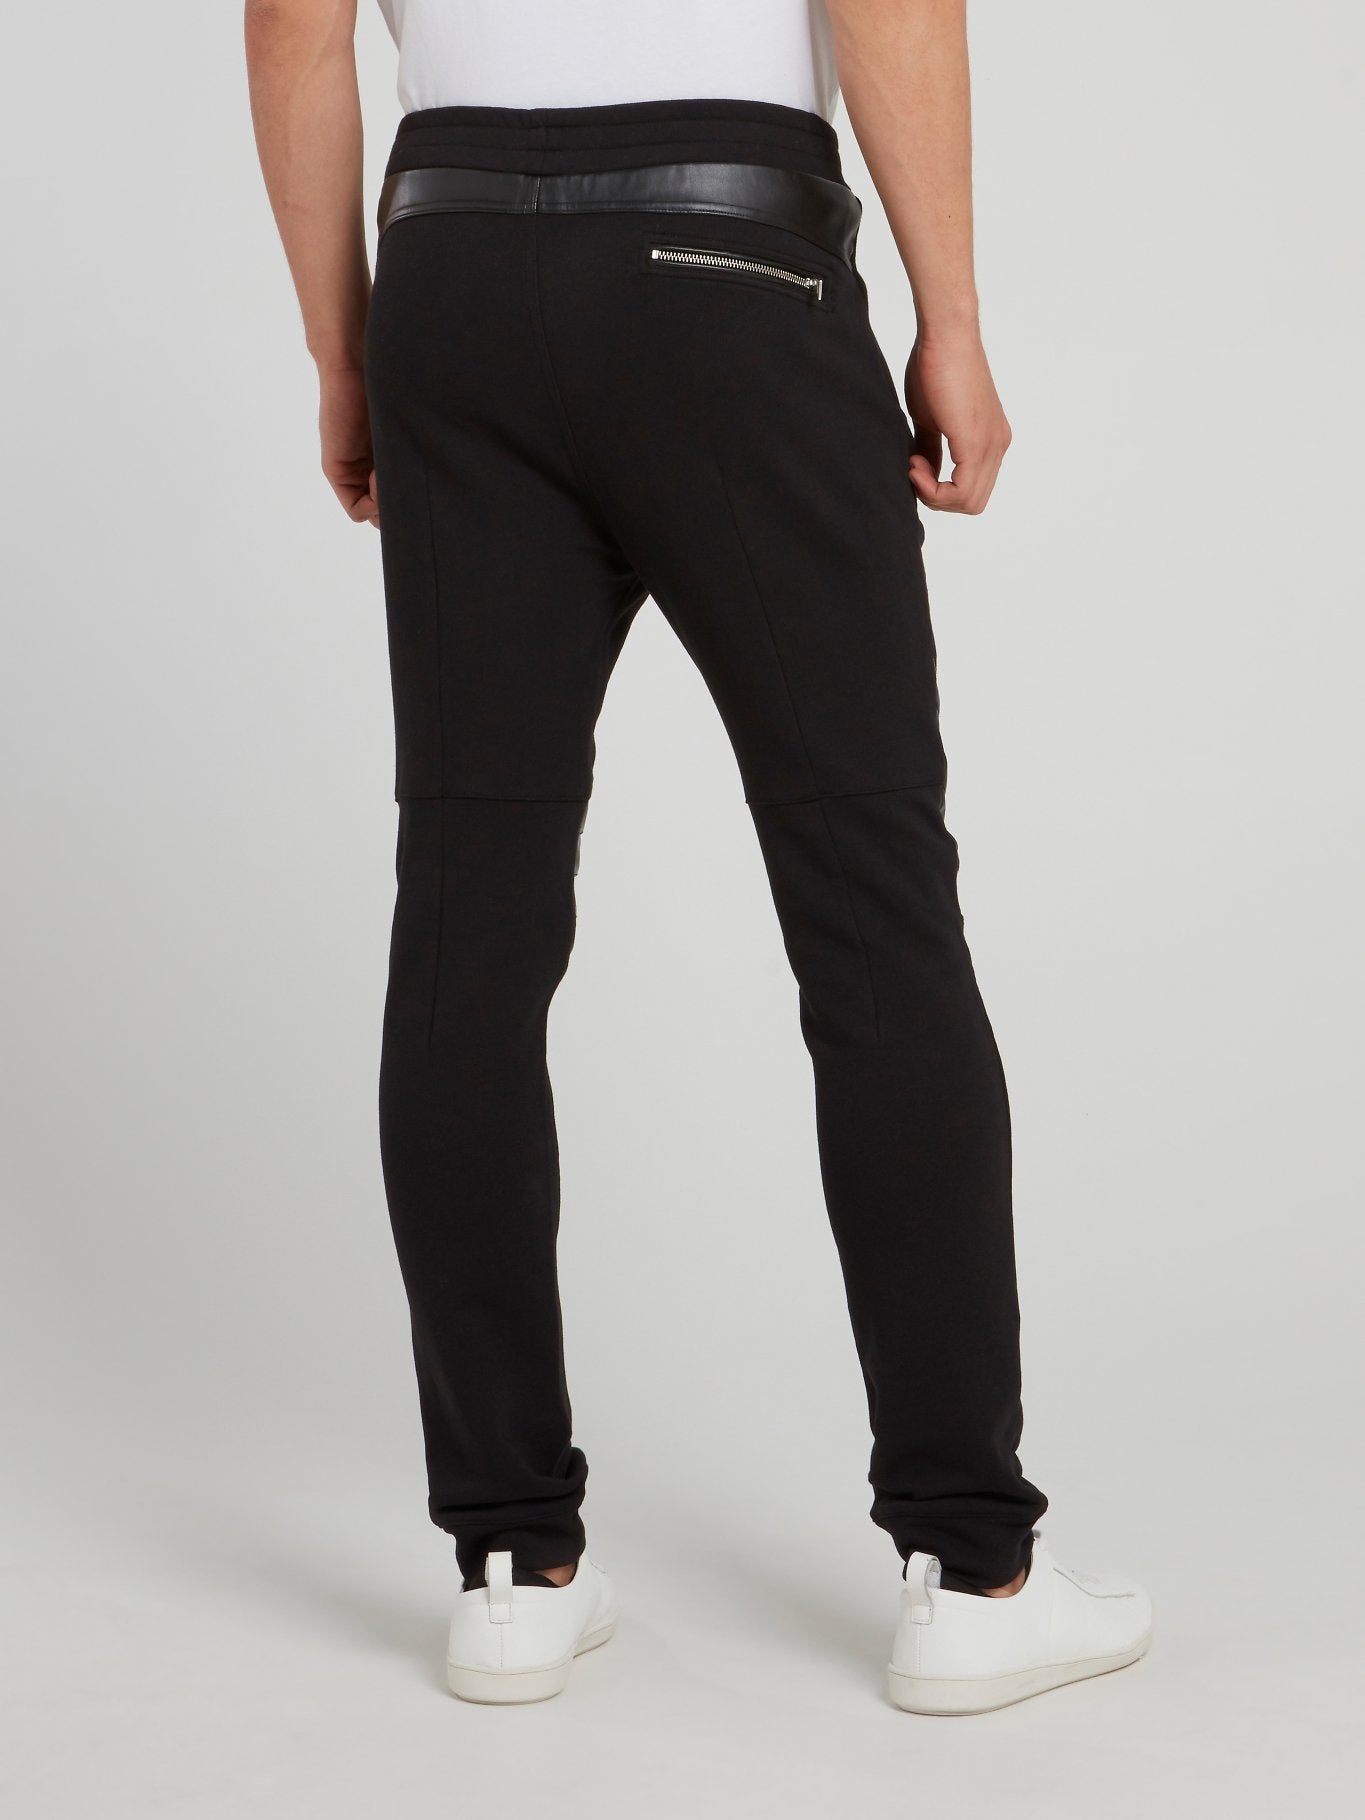 Черные кожаные брюки со вставками на коленях